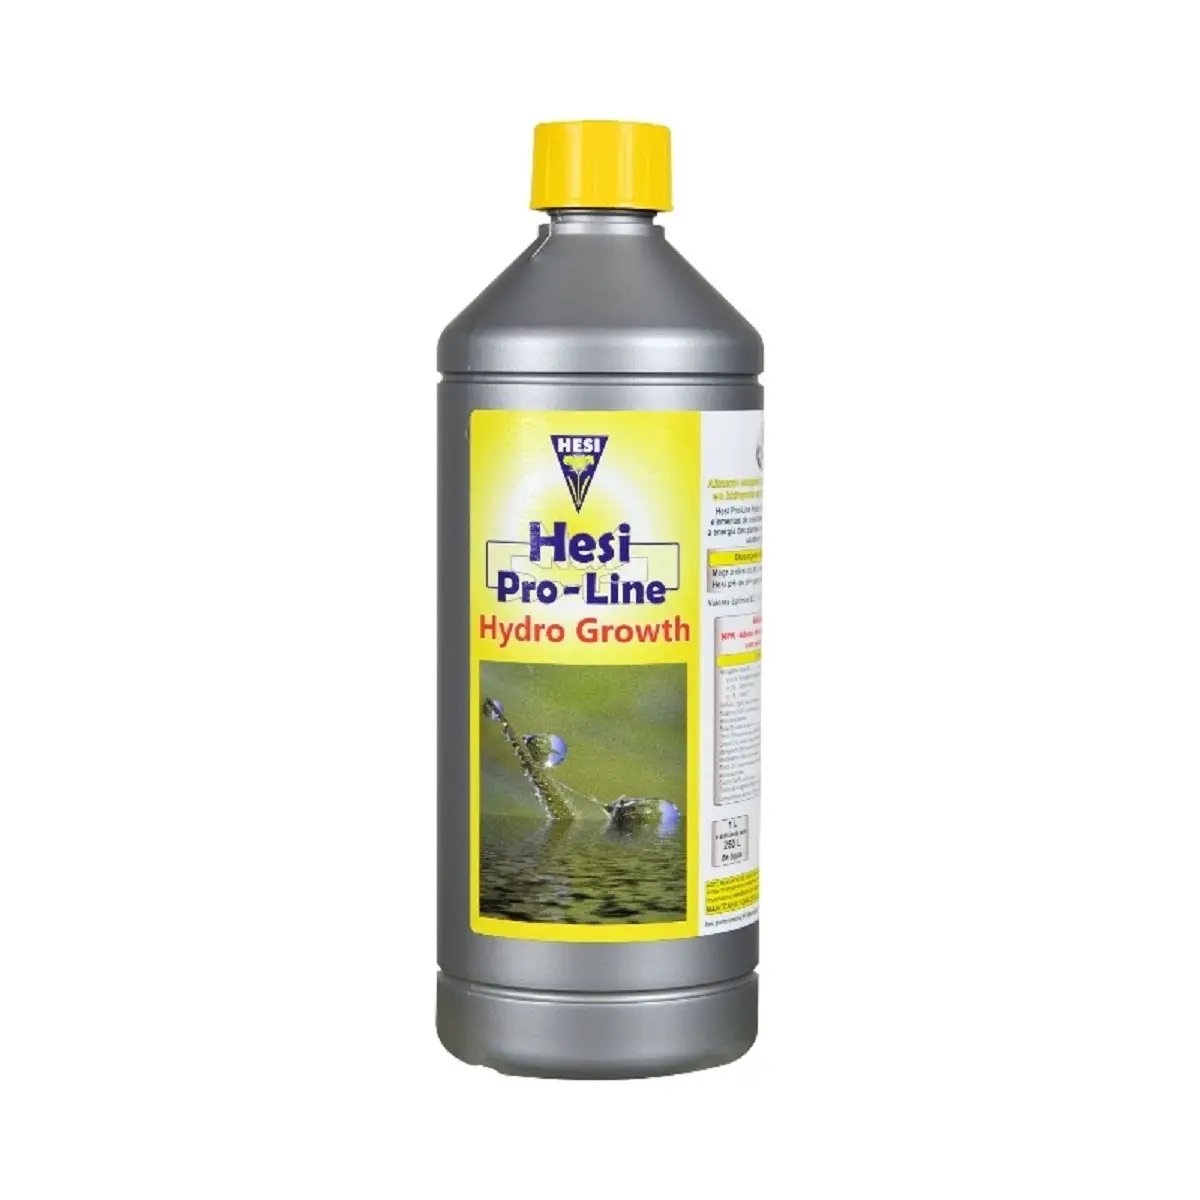 L'engrais pour culture en hydroponie Hesi Pro-Line Growth en bouteille de 1 Litre